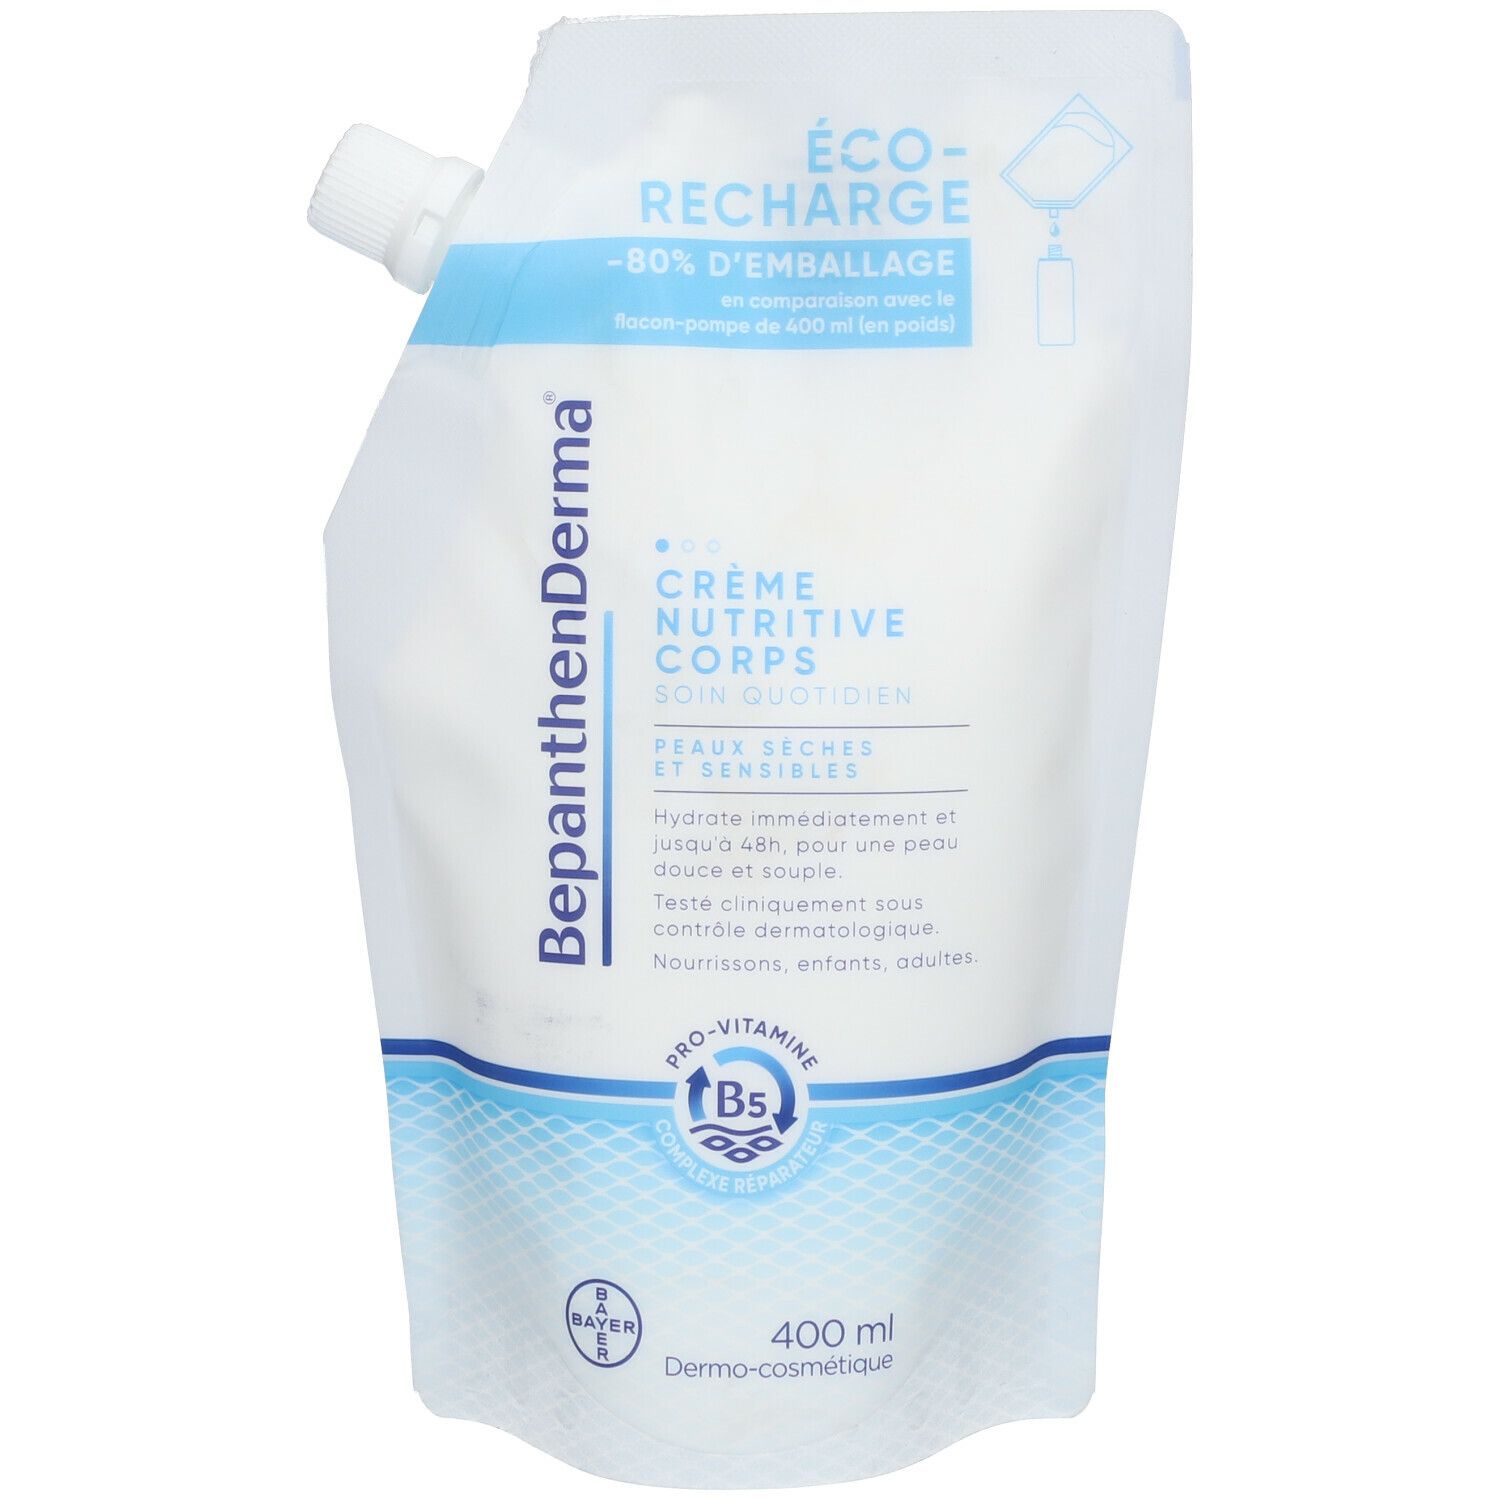 BepanthenDerma® Crème Nutritive Corps Éco-Recharge 400ml Peaux sèches et sensibles